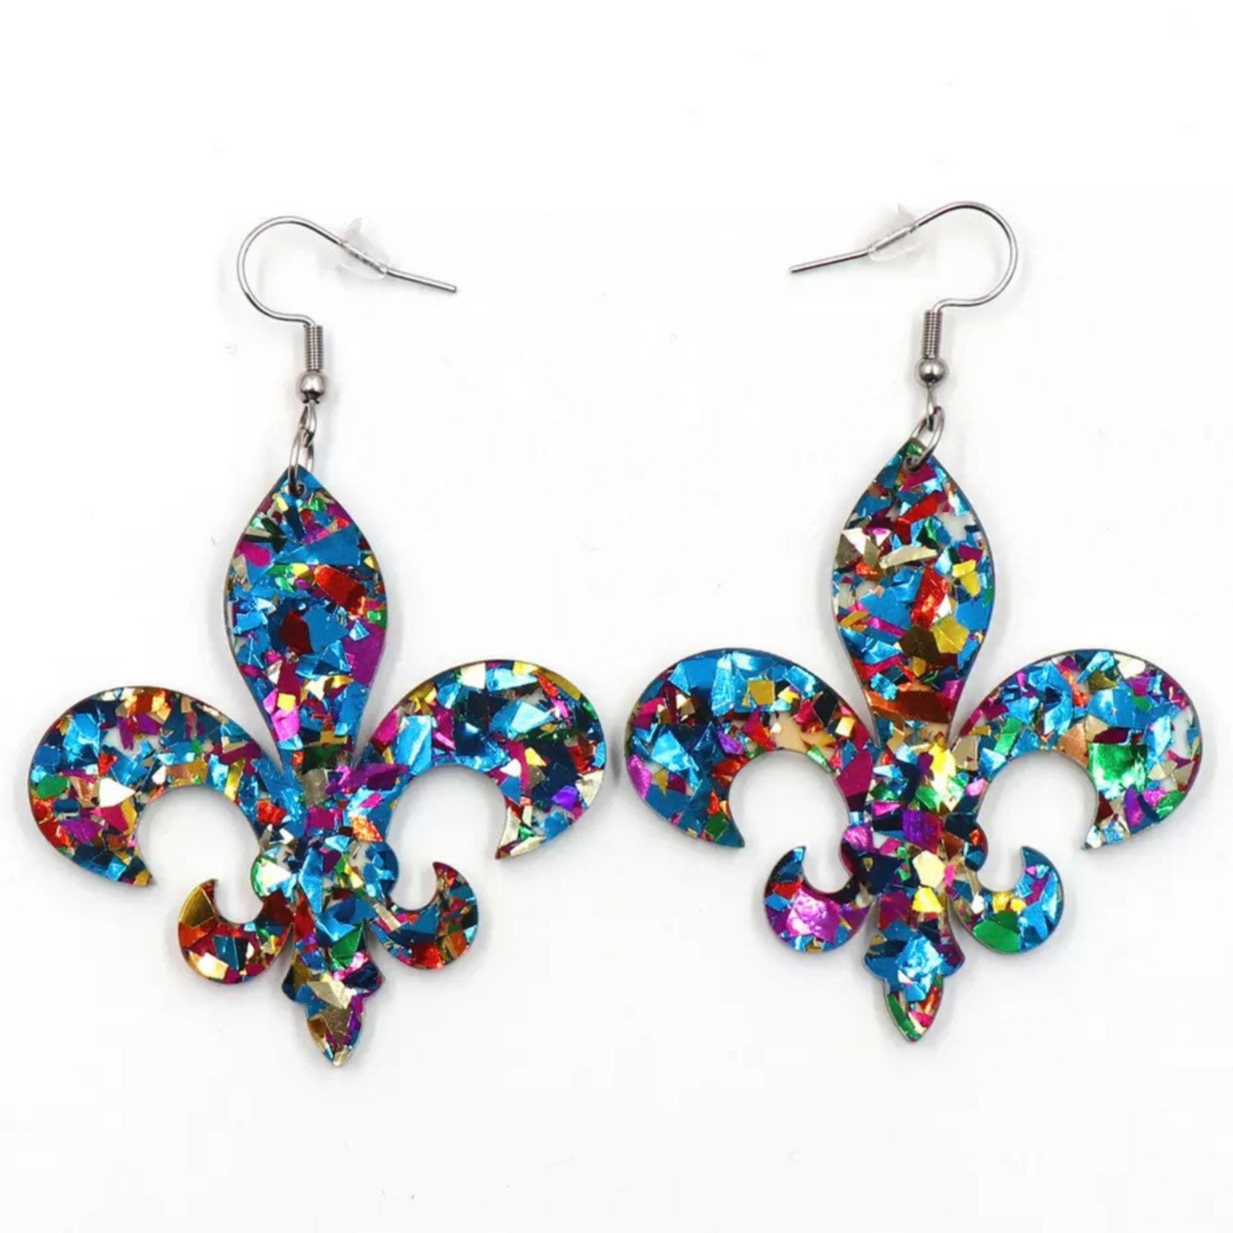 Fleur de lis Earrings - Mardi Gras Earrings, New Orleans Jewelry, Mardi Gras Jewelry, Purple Green Gold, Glitter Earrings, Beaded Earrings